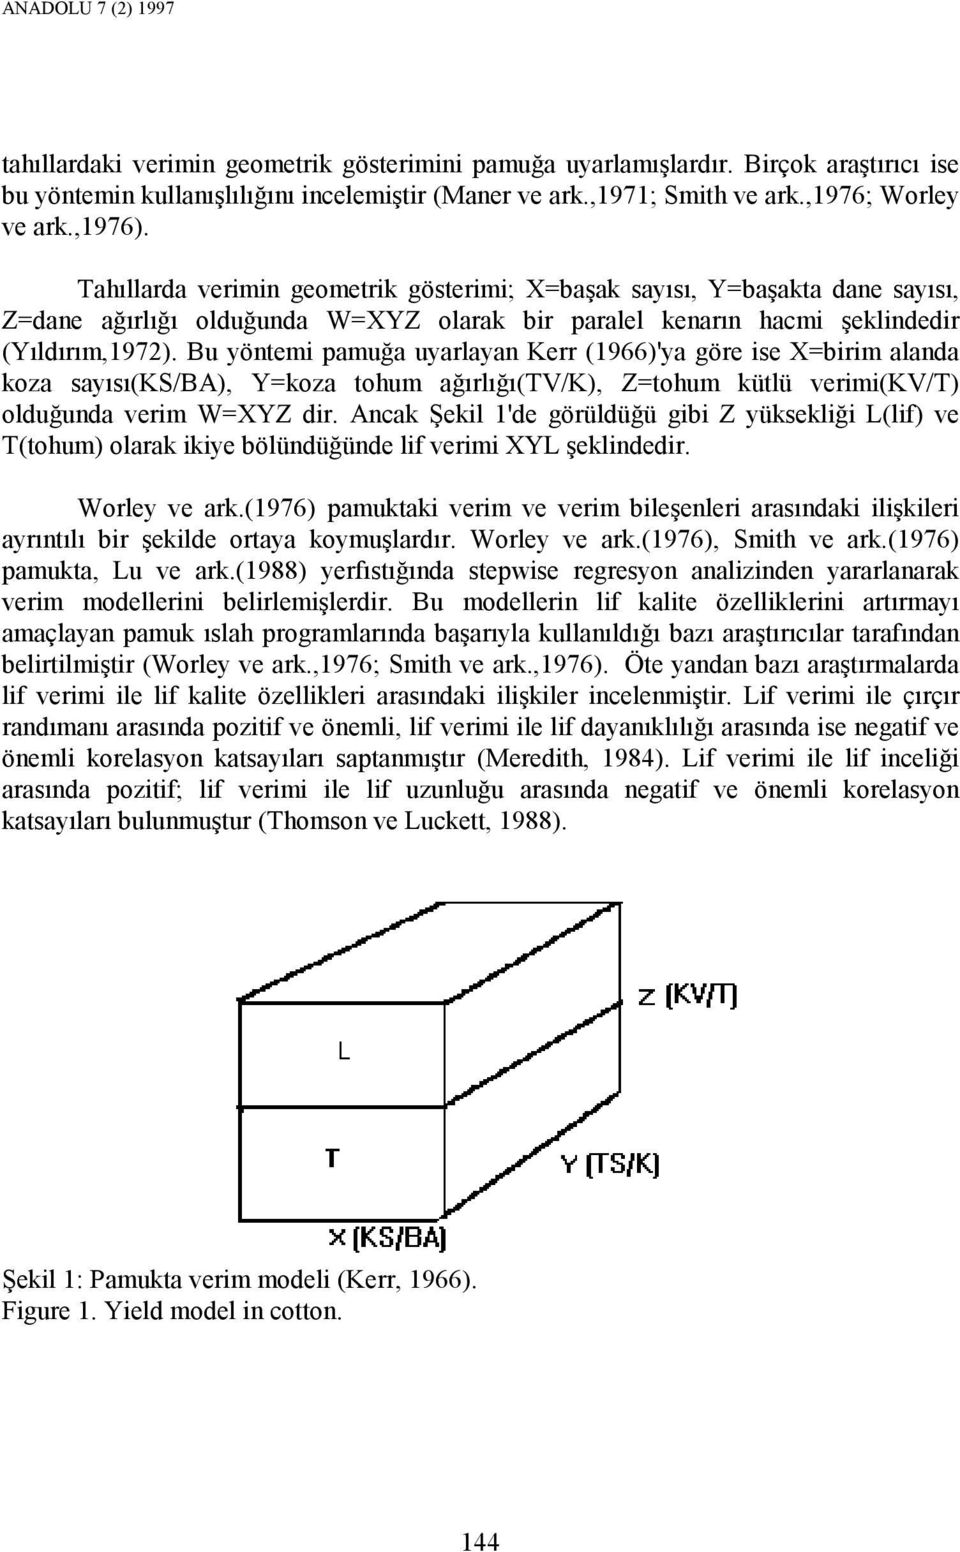 Tahıllarda verimin geometrik gösterimi; X=başak sayısı, Y=başakta dane sayısı, Z=dane ağırlığı olduğunda W=XYZ olarak bir paralel kenarın hacmi şeklindedir (Yıldırım,1972).